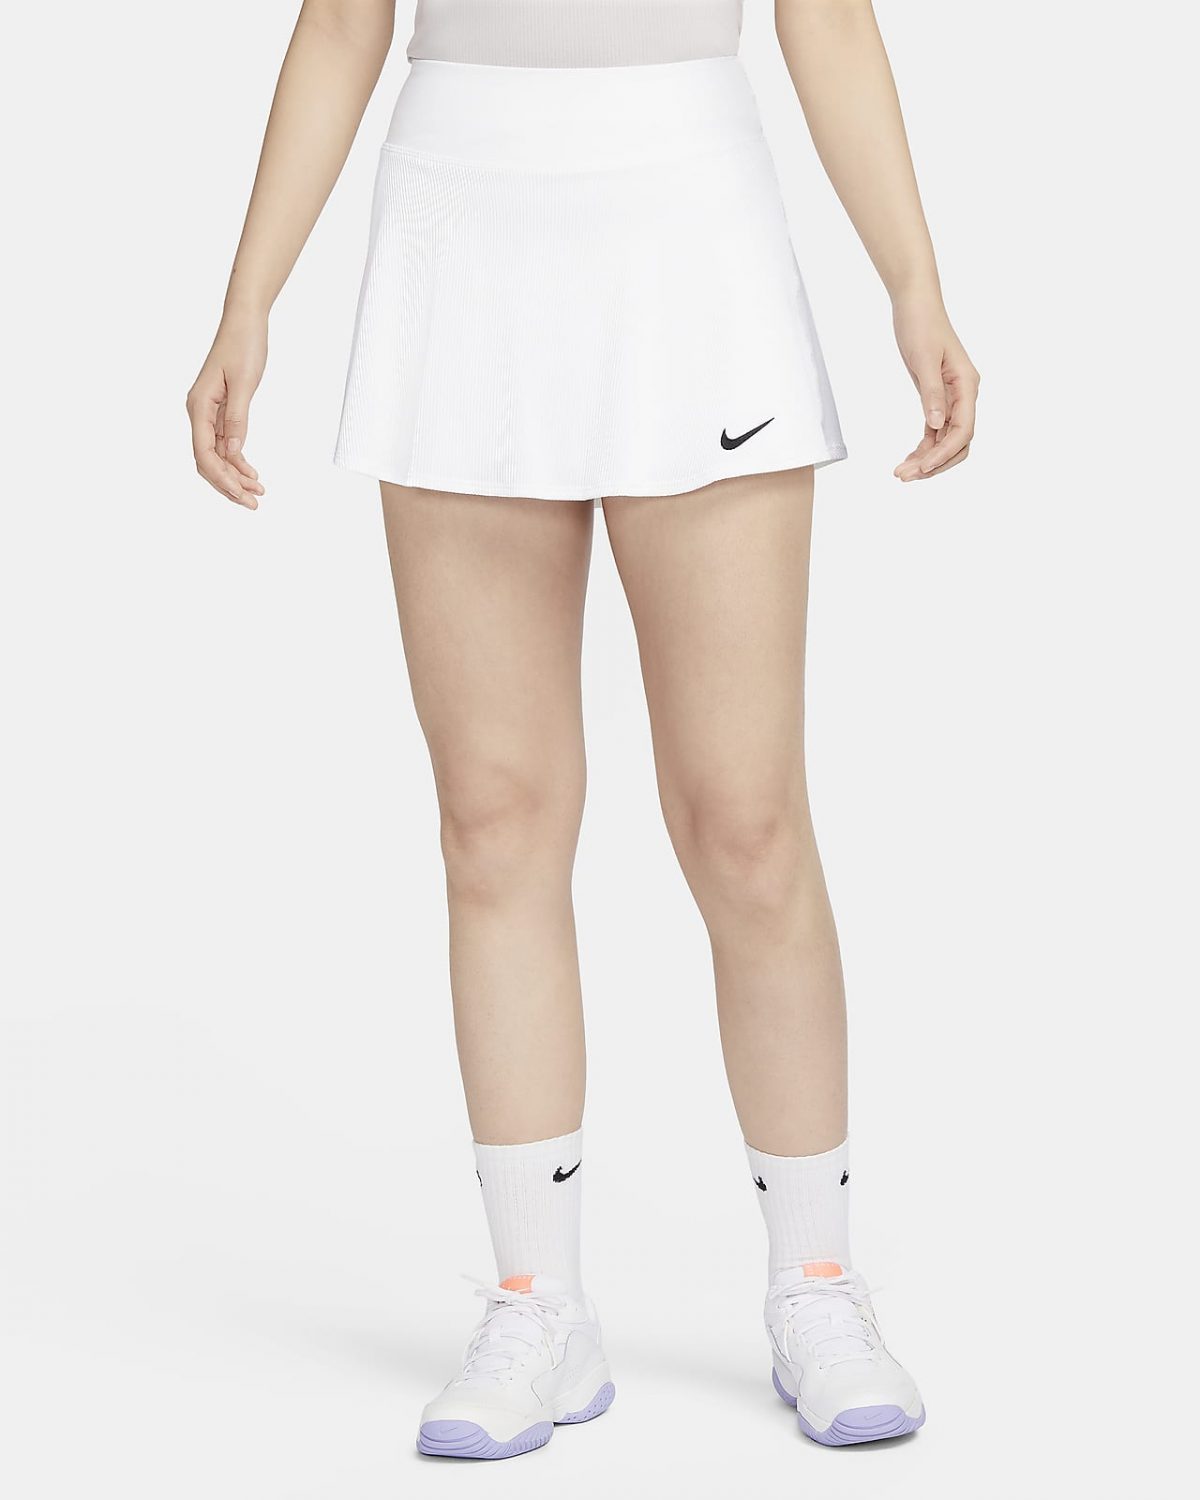 Женская юбка NikeCourt Advantage черная фото